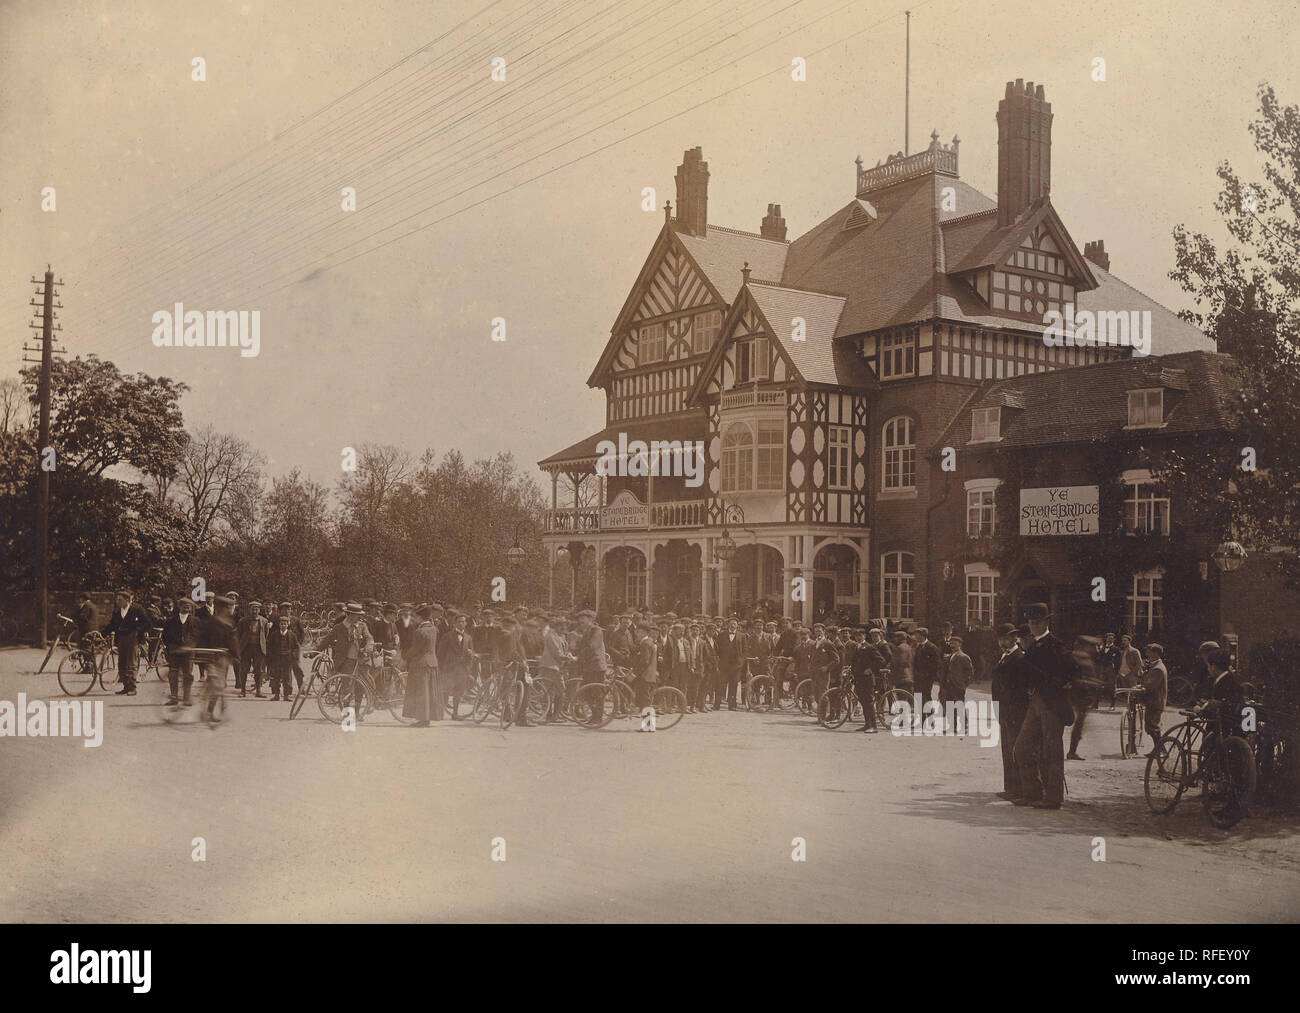 Historisches Archiv Bild von Radfahrern, Cycle Club Meeting, Ihr Stonebridge Hotel, Coventry, c 1910. Stockfoto